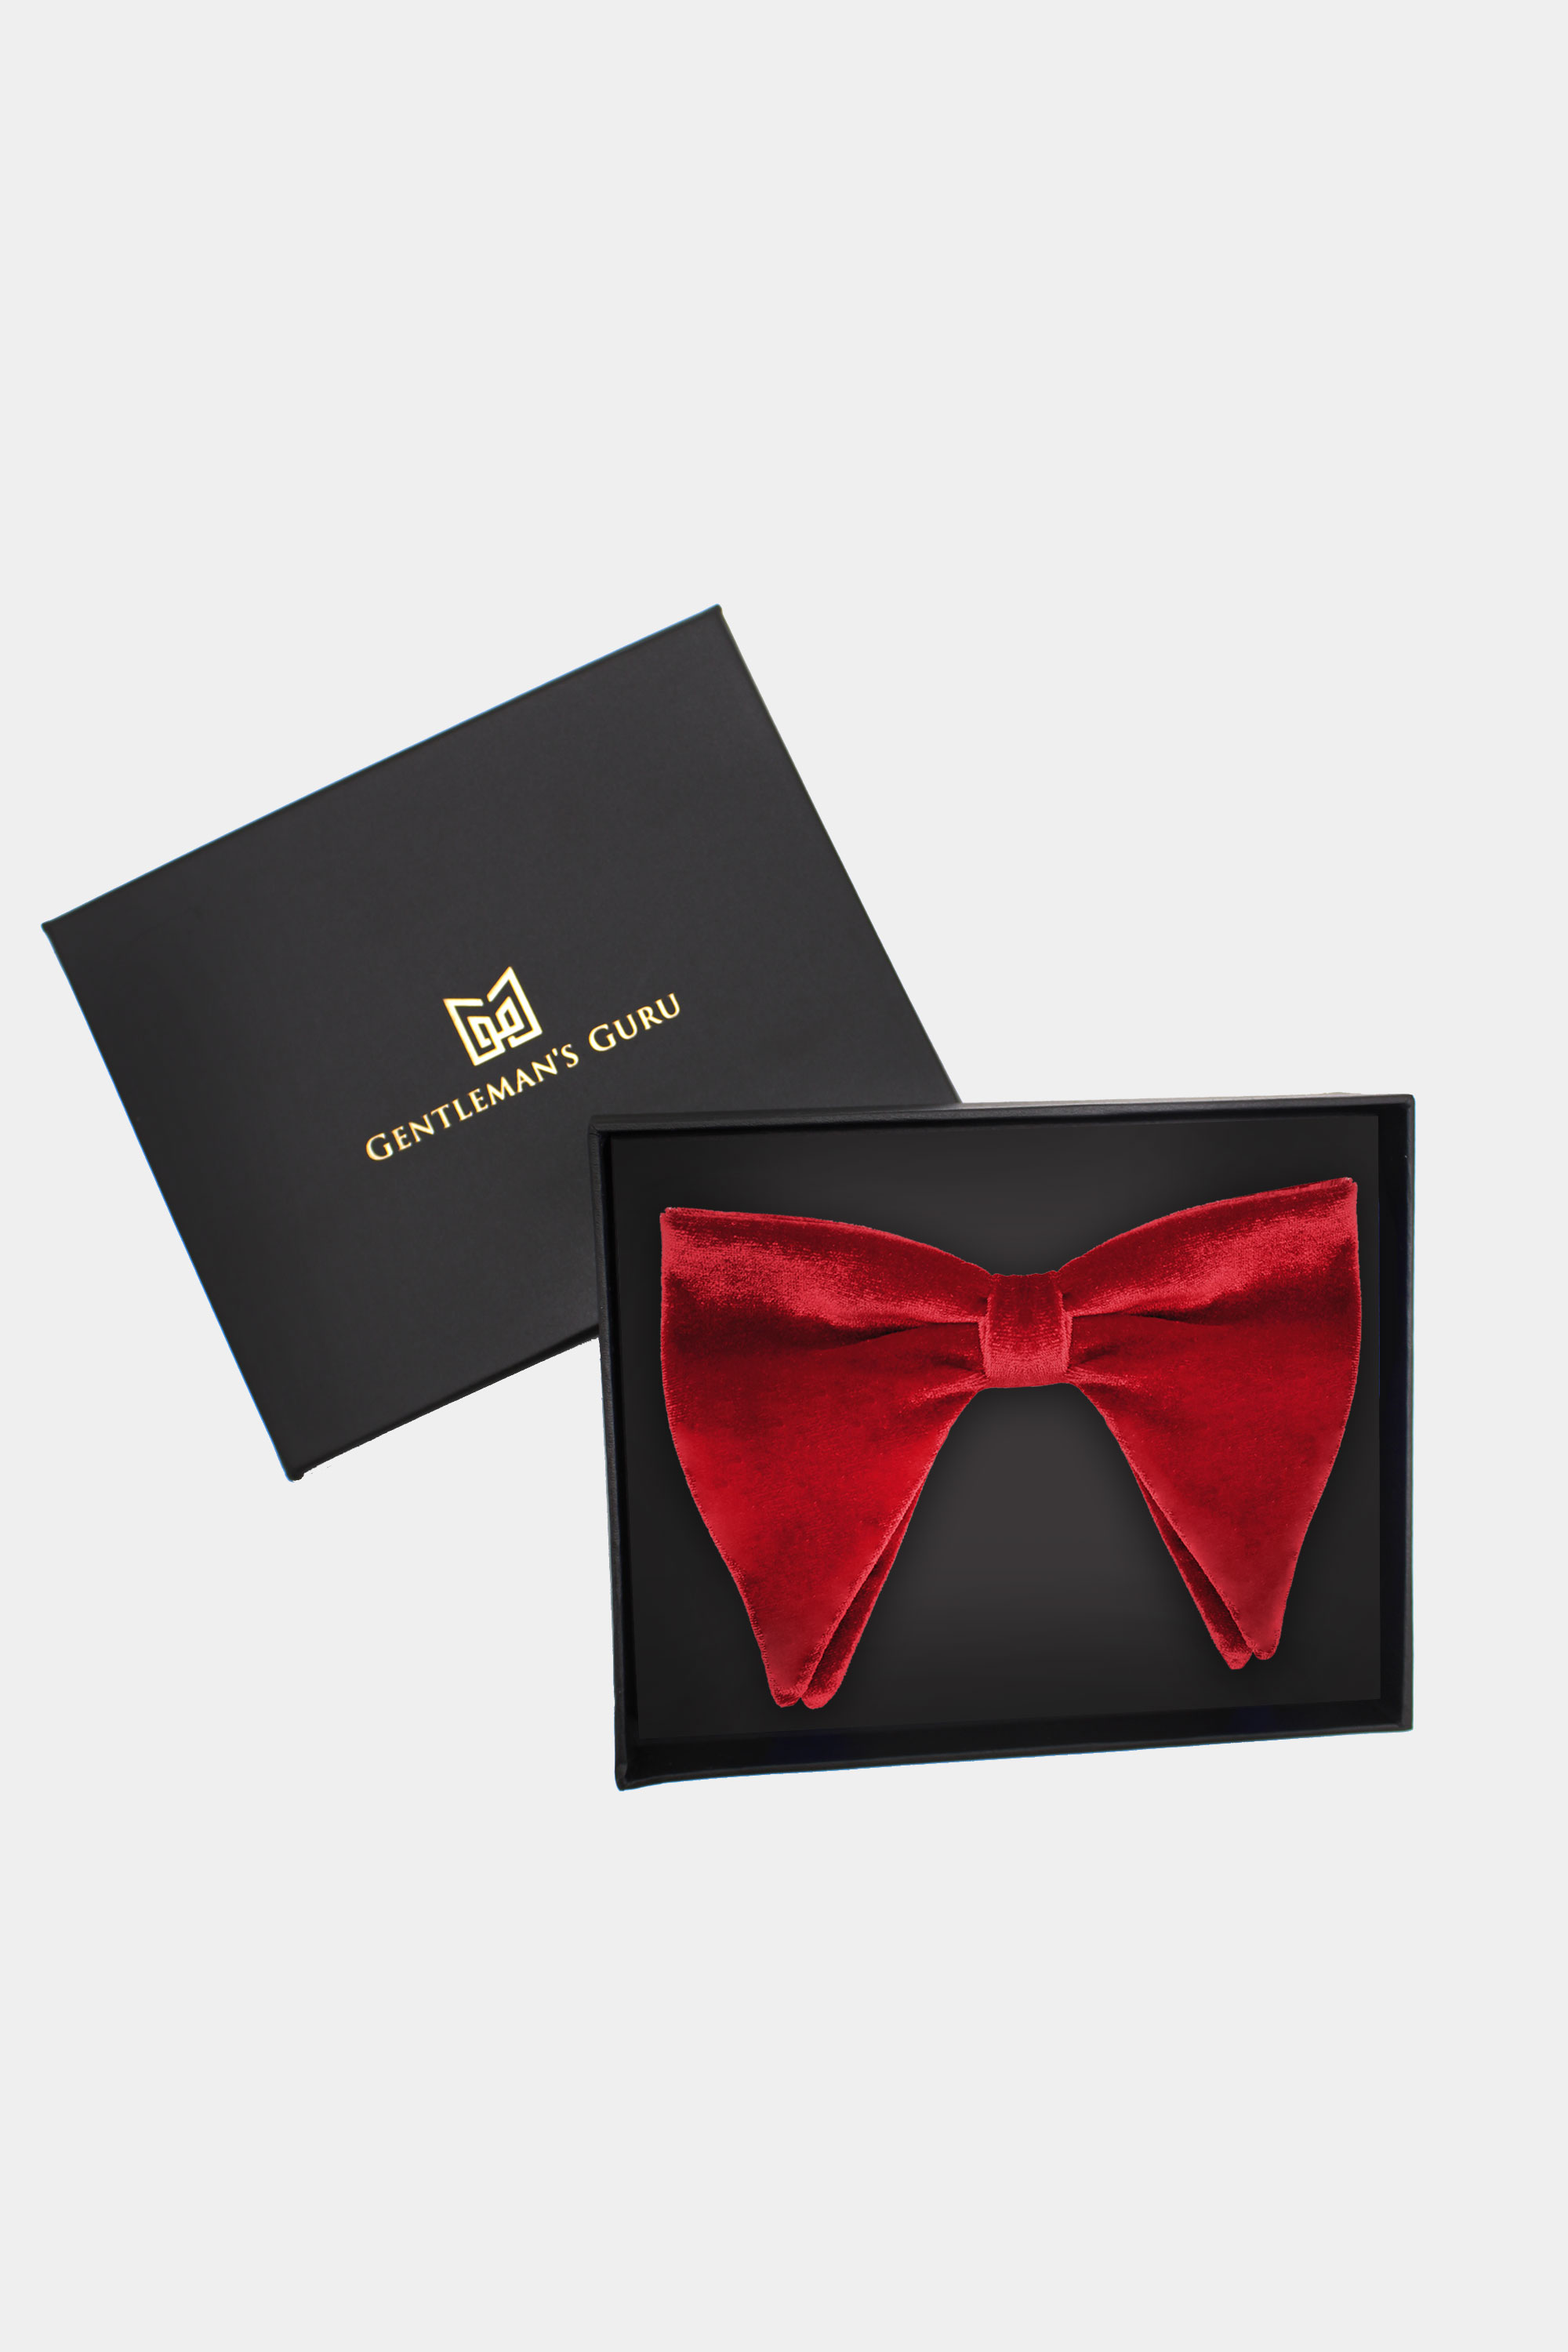 https://www.gentlemansguru.com/wp-content/uploads/2018/07/Red-Tuxedo-Bow-Tie-from-Gentlemansguru.com_.jpg